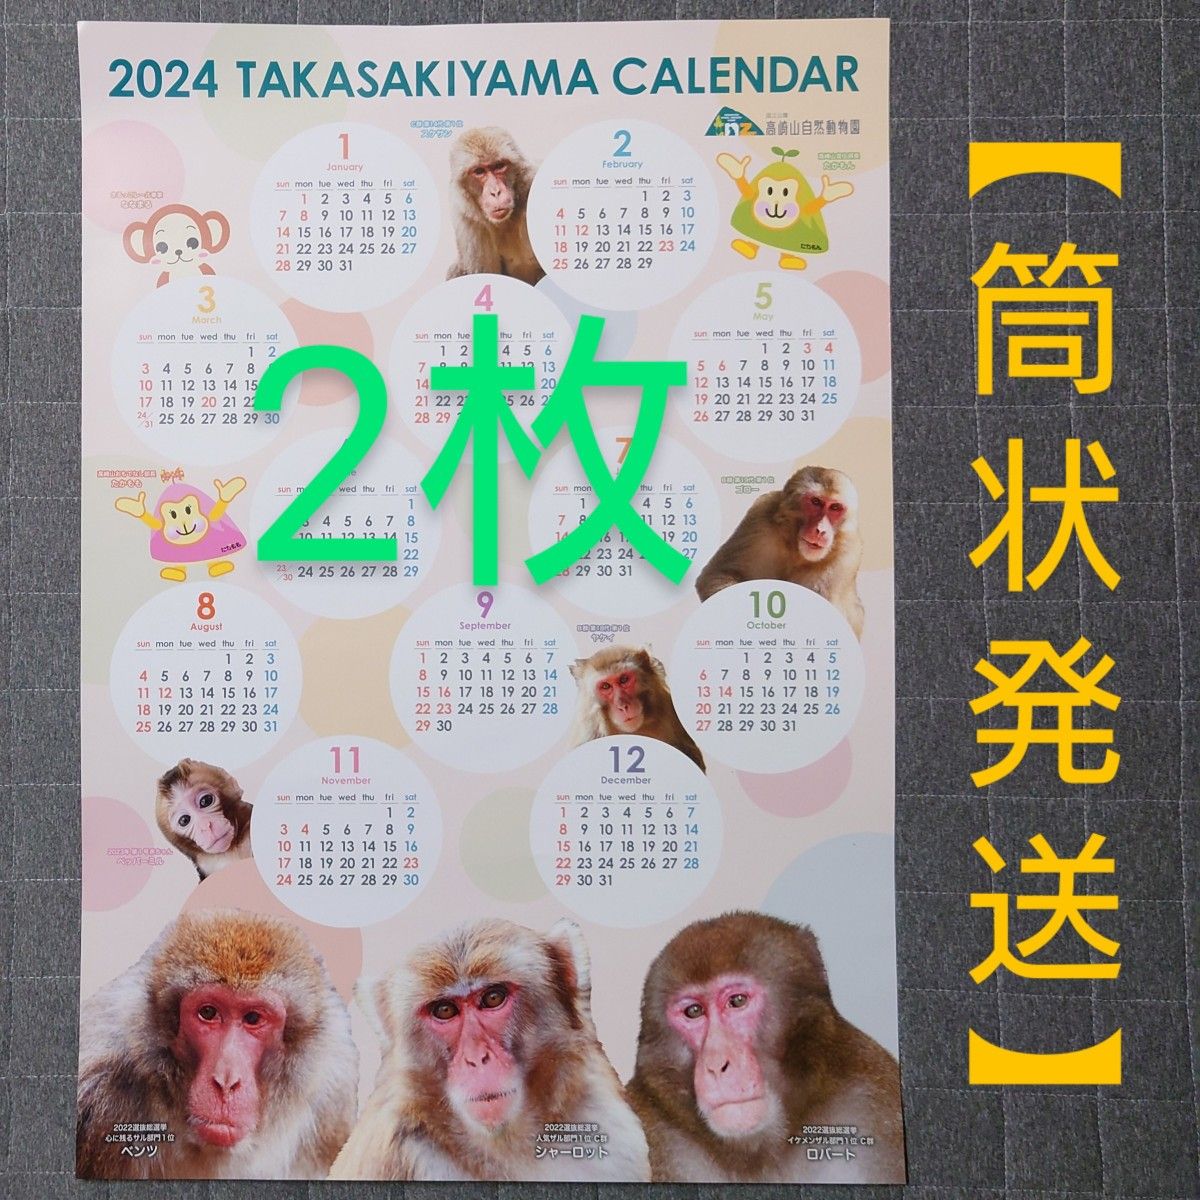 2024 高崎山 カレンダー ポスタータイプ 【筒状発送】 2枚